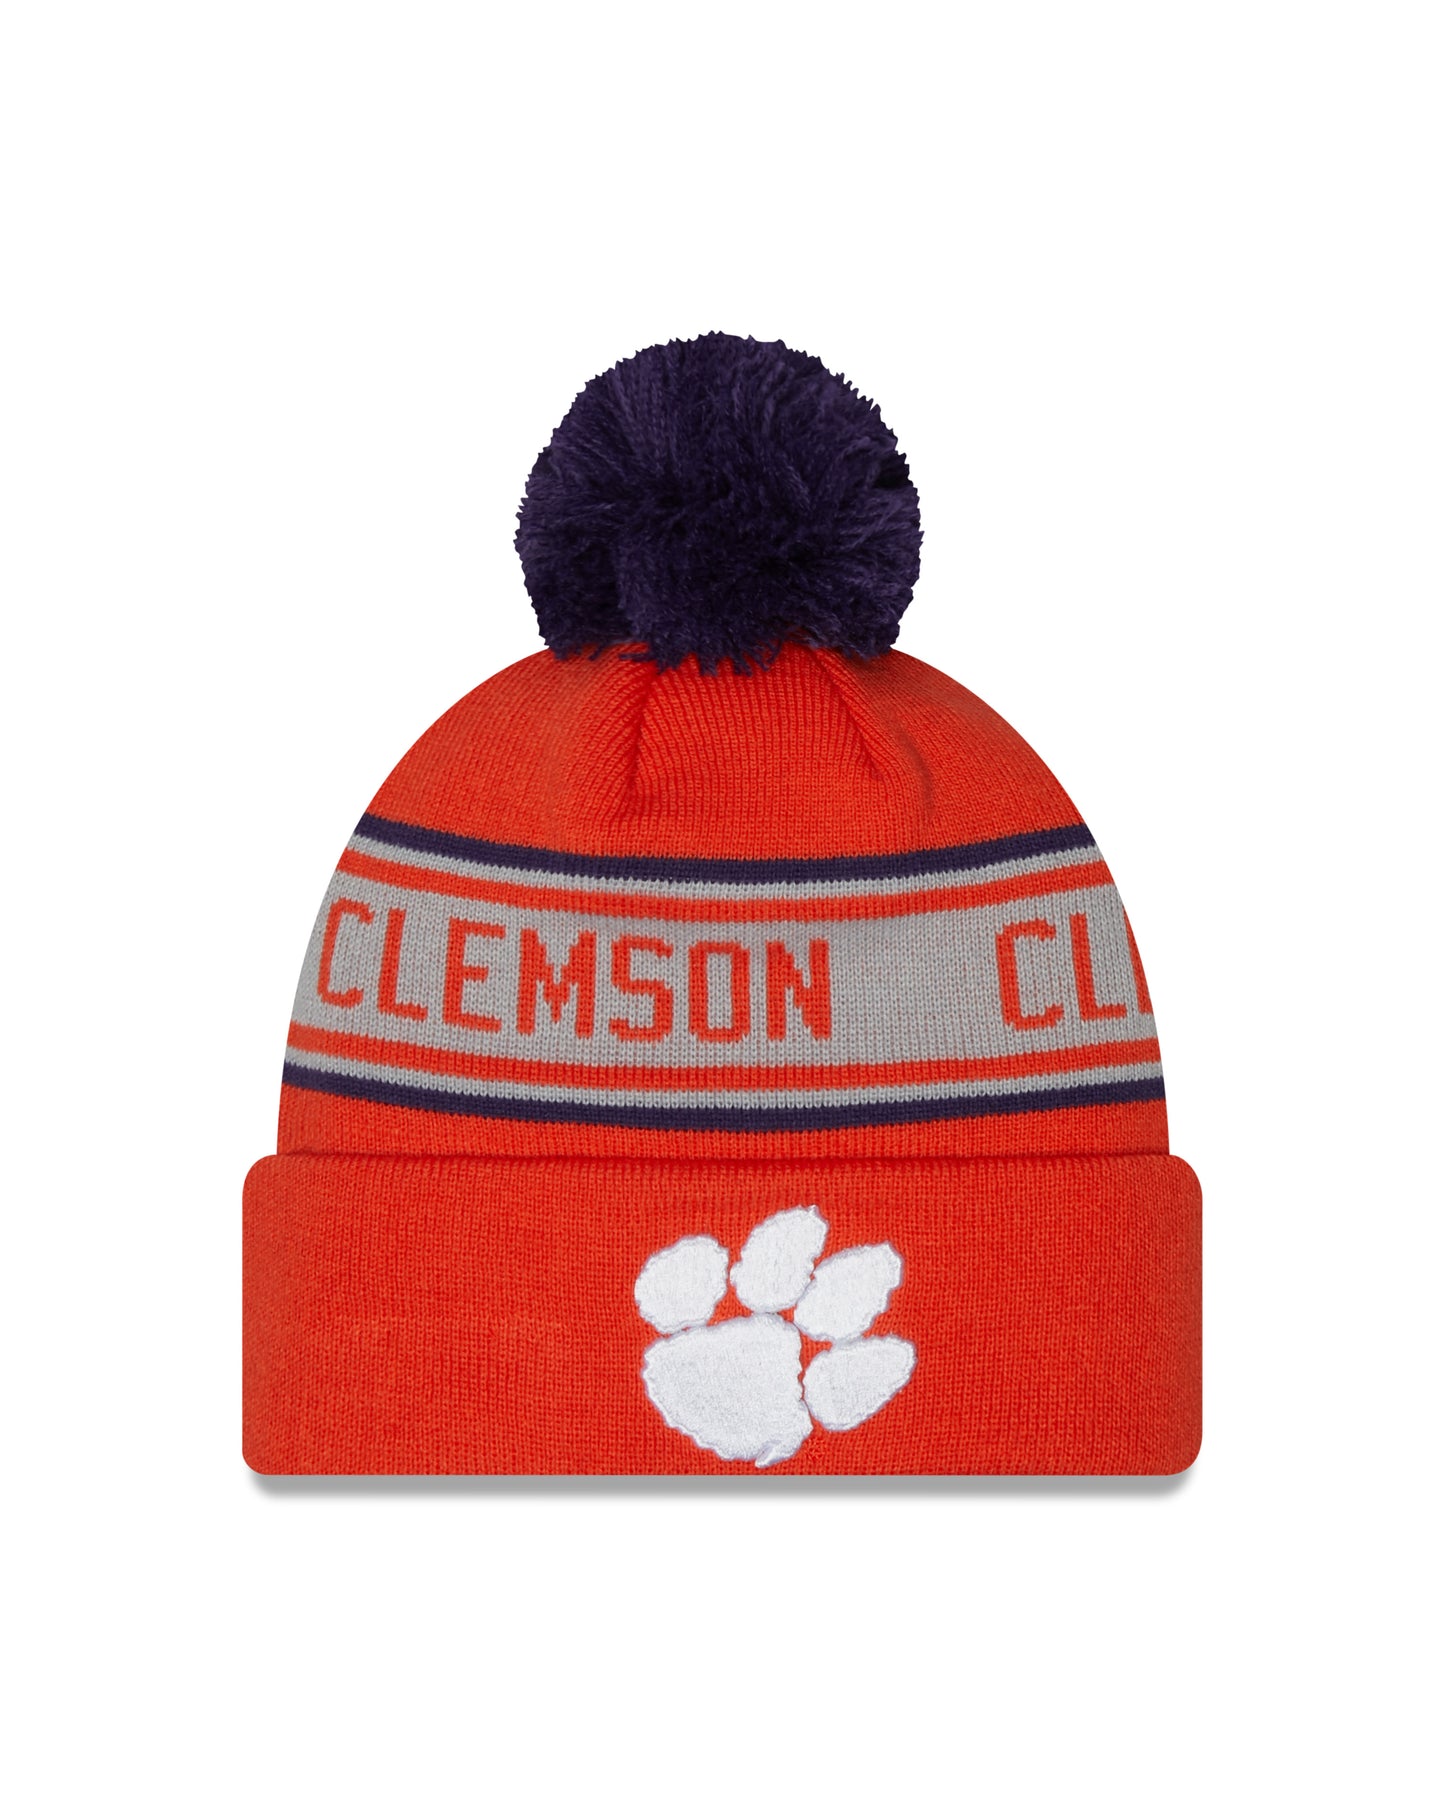 Clemson Tigers NCAA New Era Orange Repeat Cuffed Pom Knit Hat